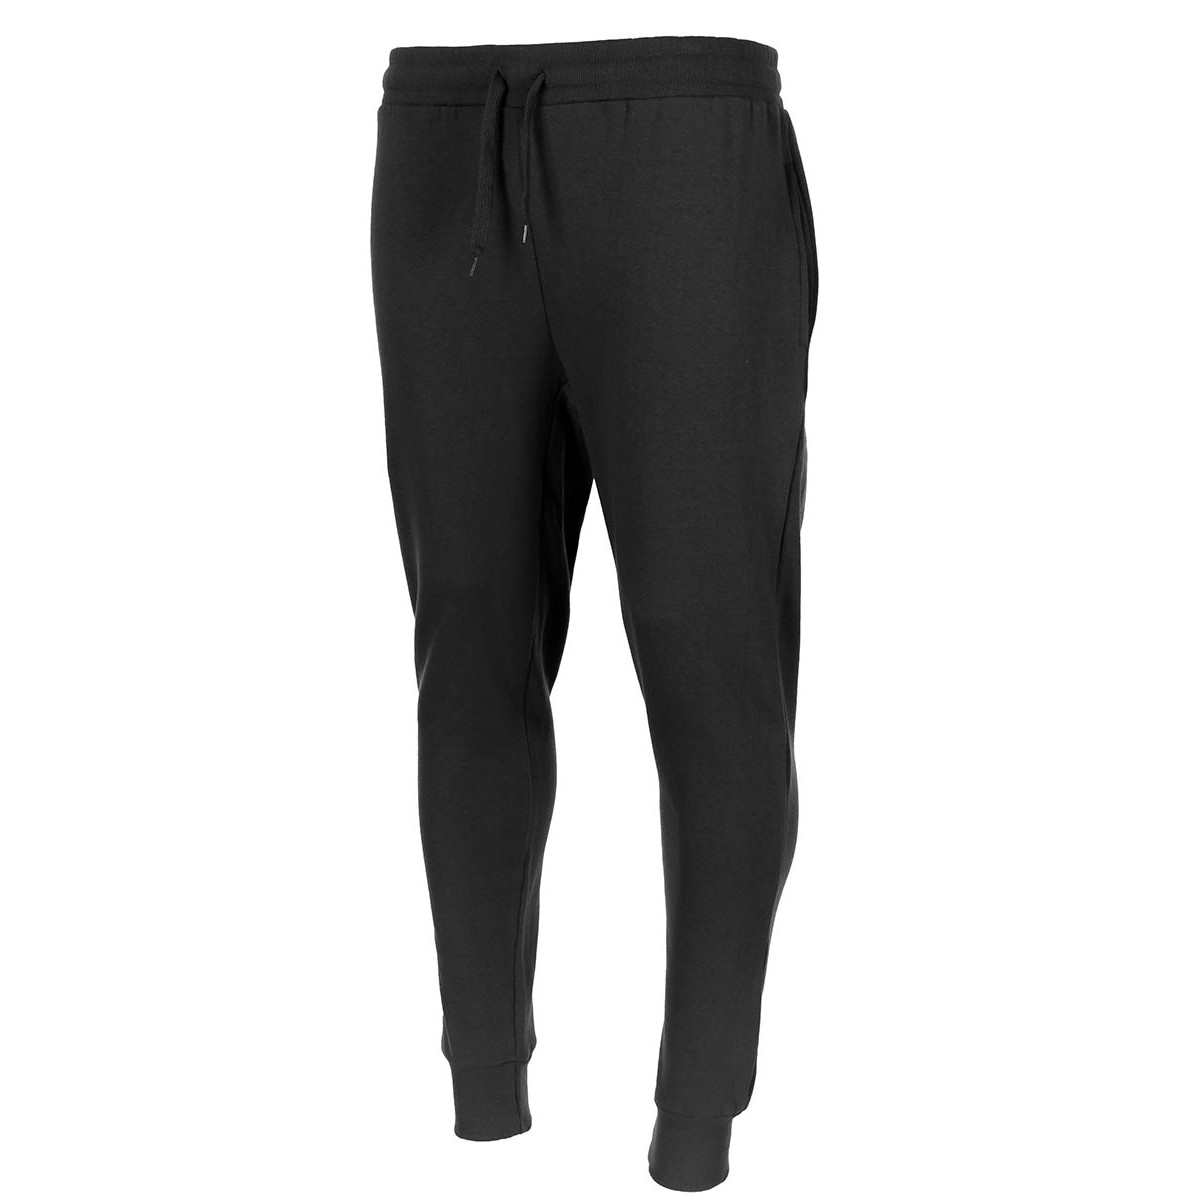 Kalhoty sportovní MFH Jogger - černé, L